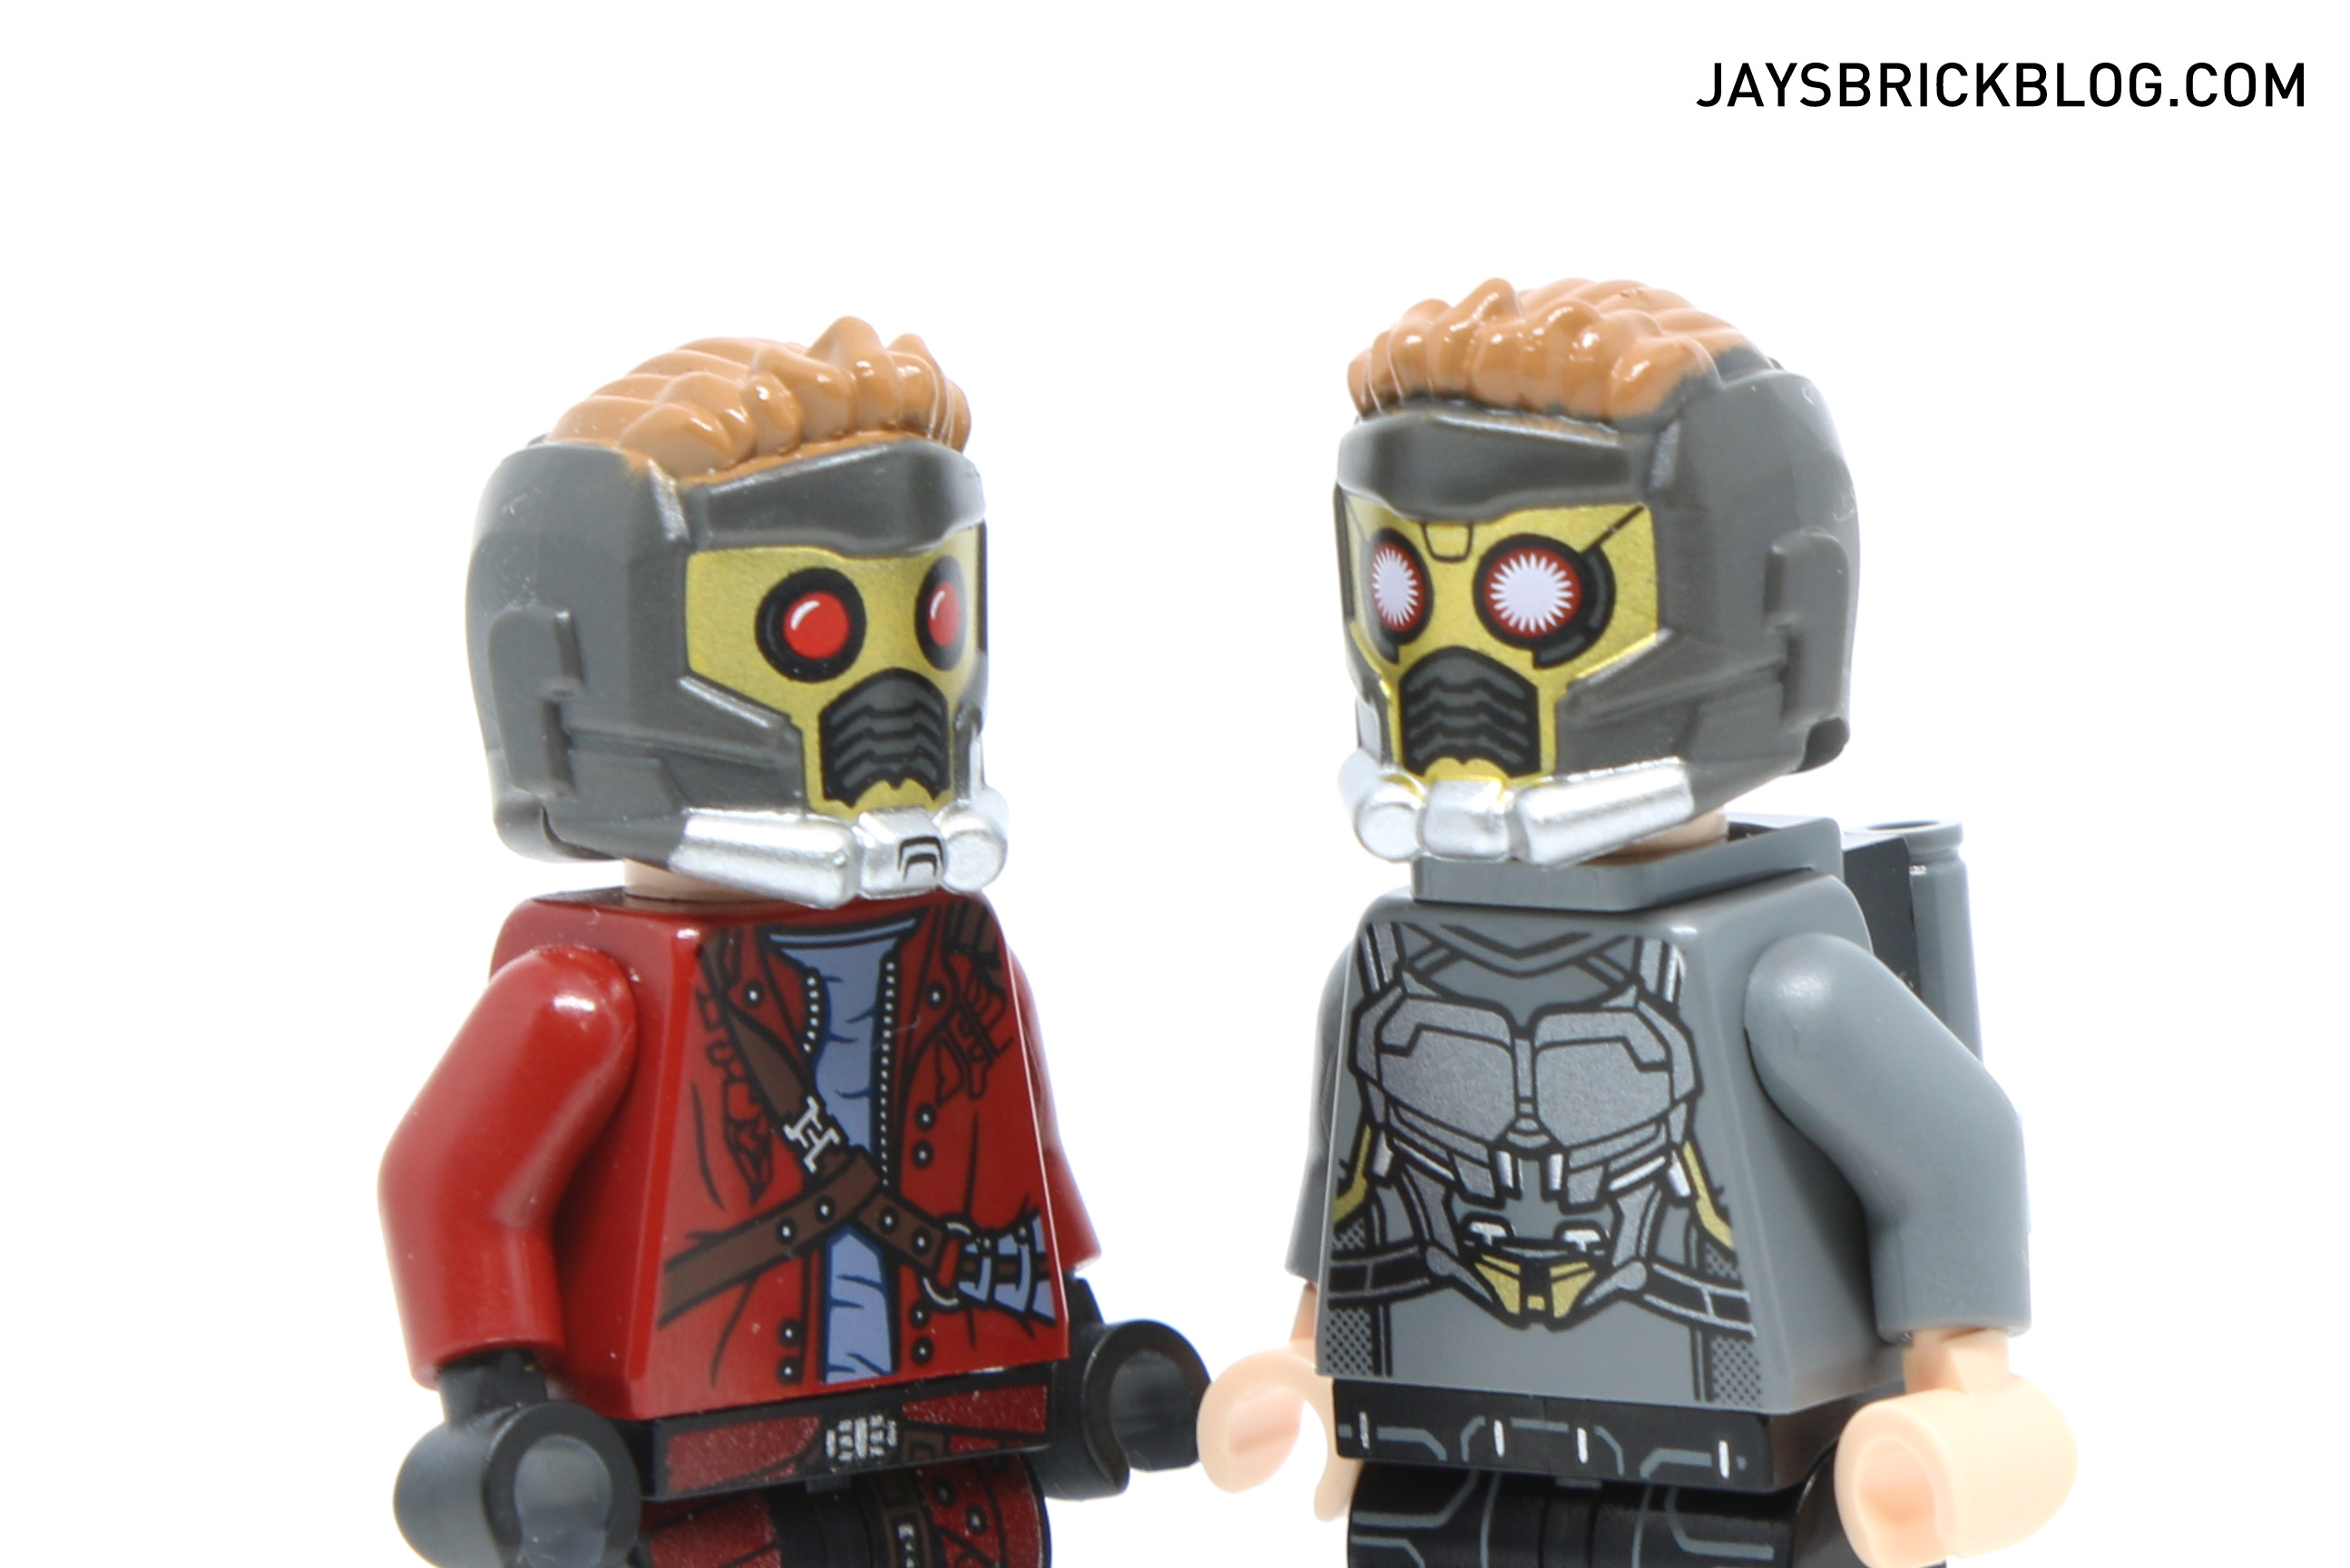 Review: LEGO 76081 The Milano vs The Abilisk - Jay's Brick Blog